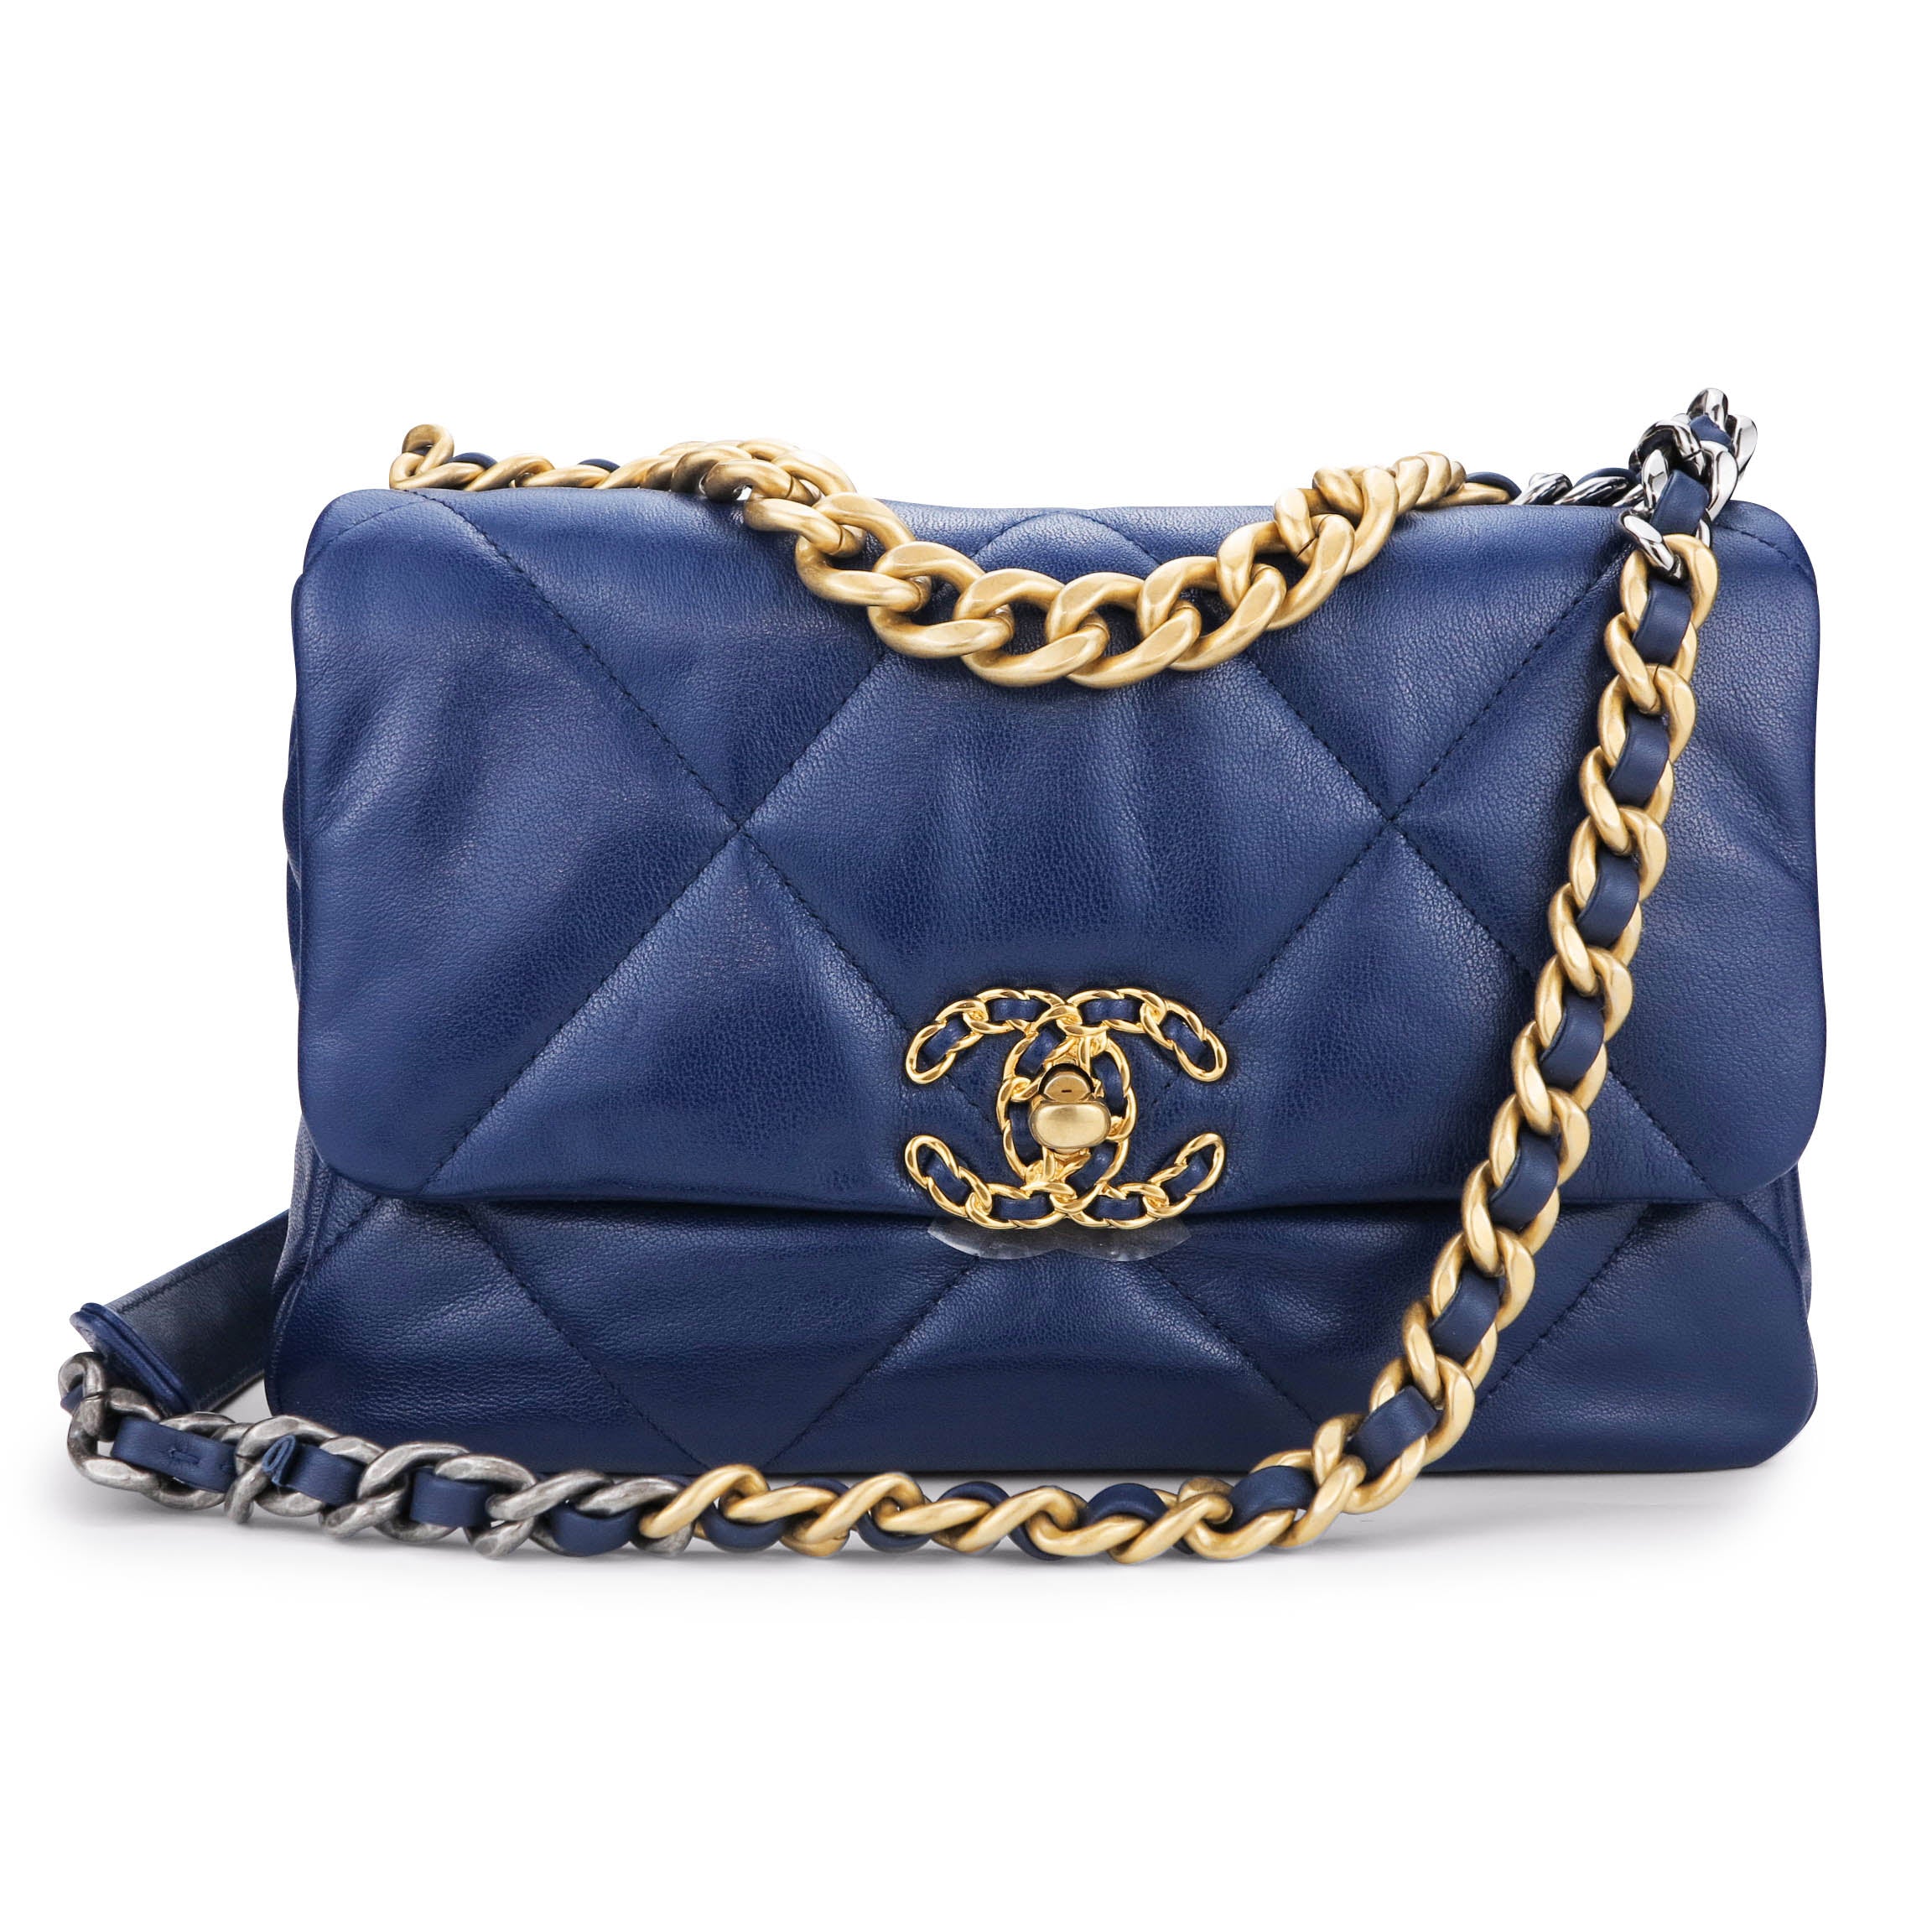 Chanel 19 Flap Bag aqua blue